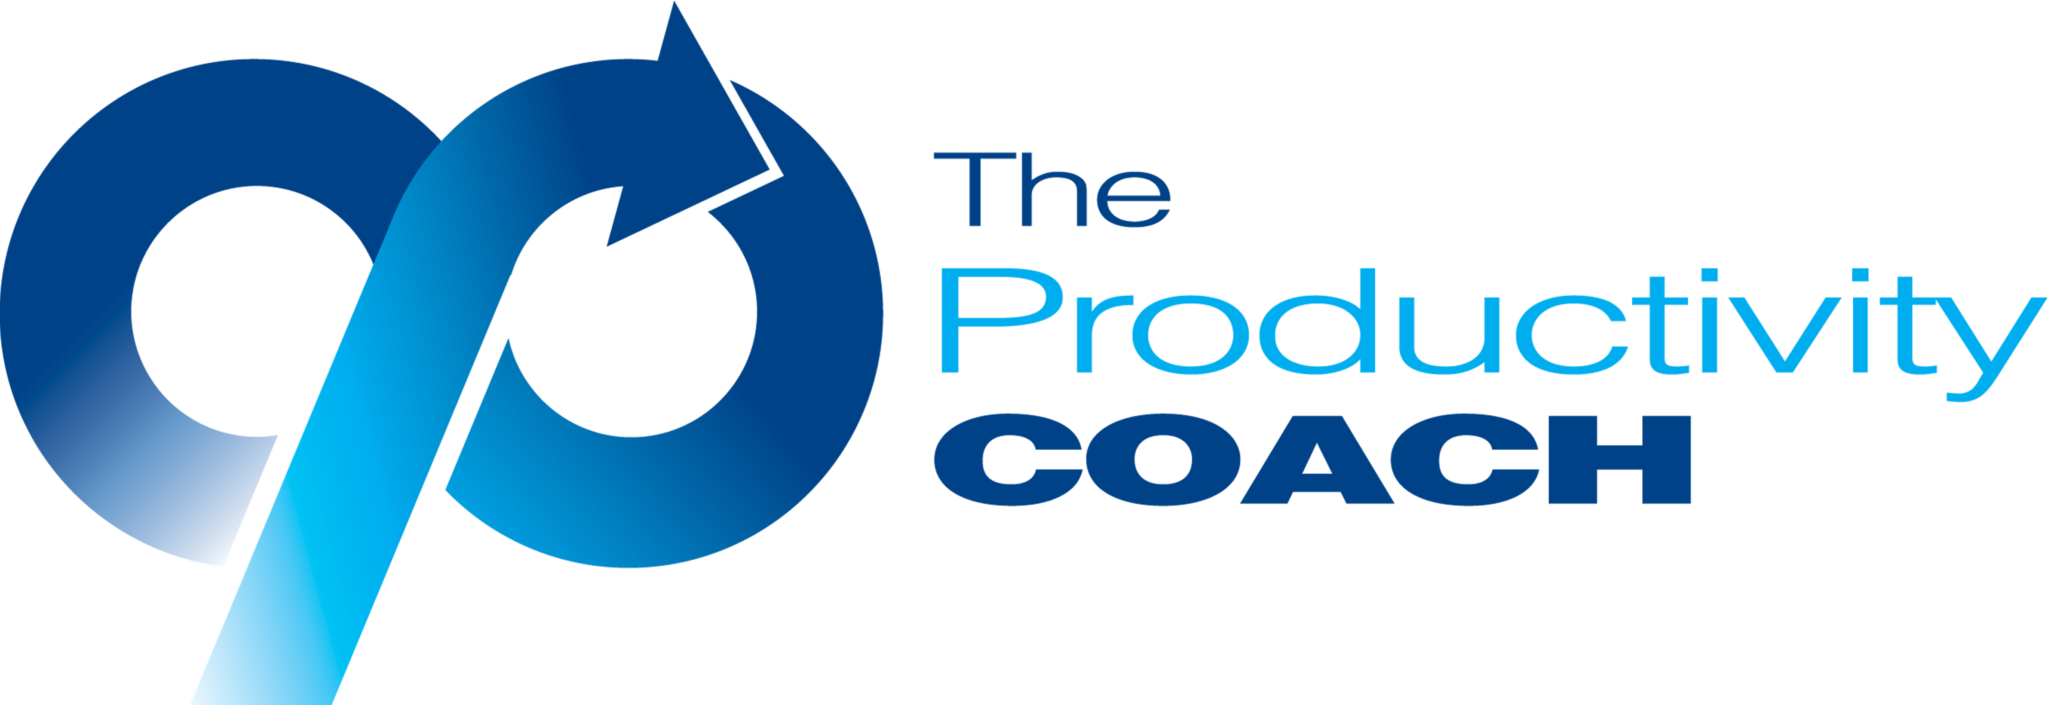 theproductivitycoach-resize-logo